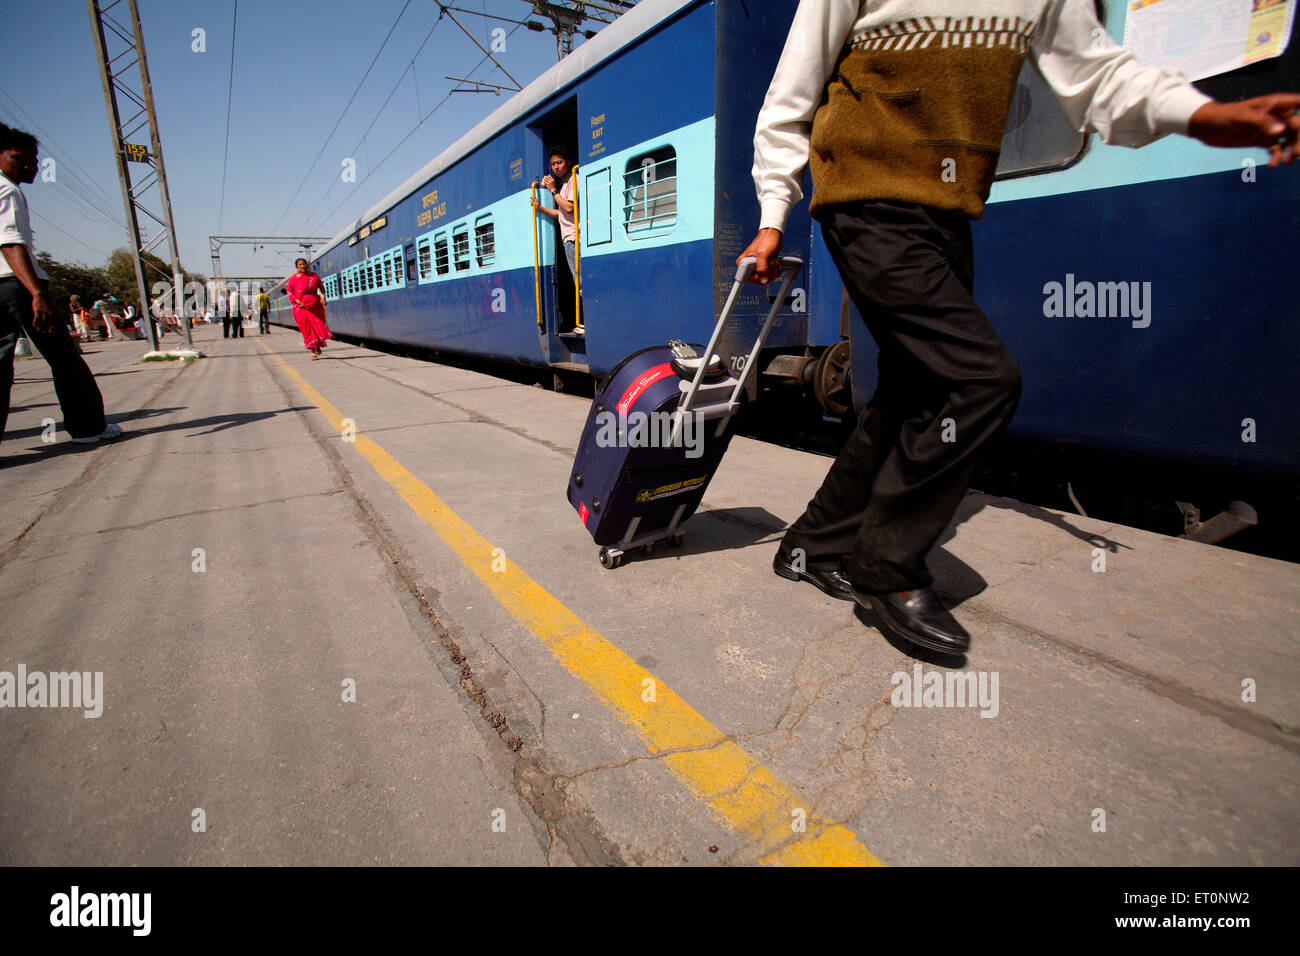 Bolsa con carro de pasajeros en la estación de ferrocarril en la India Foto de stock